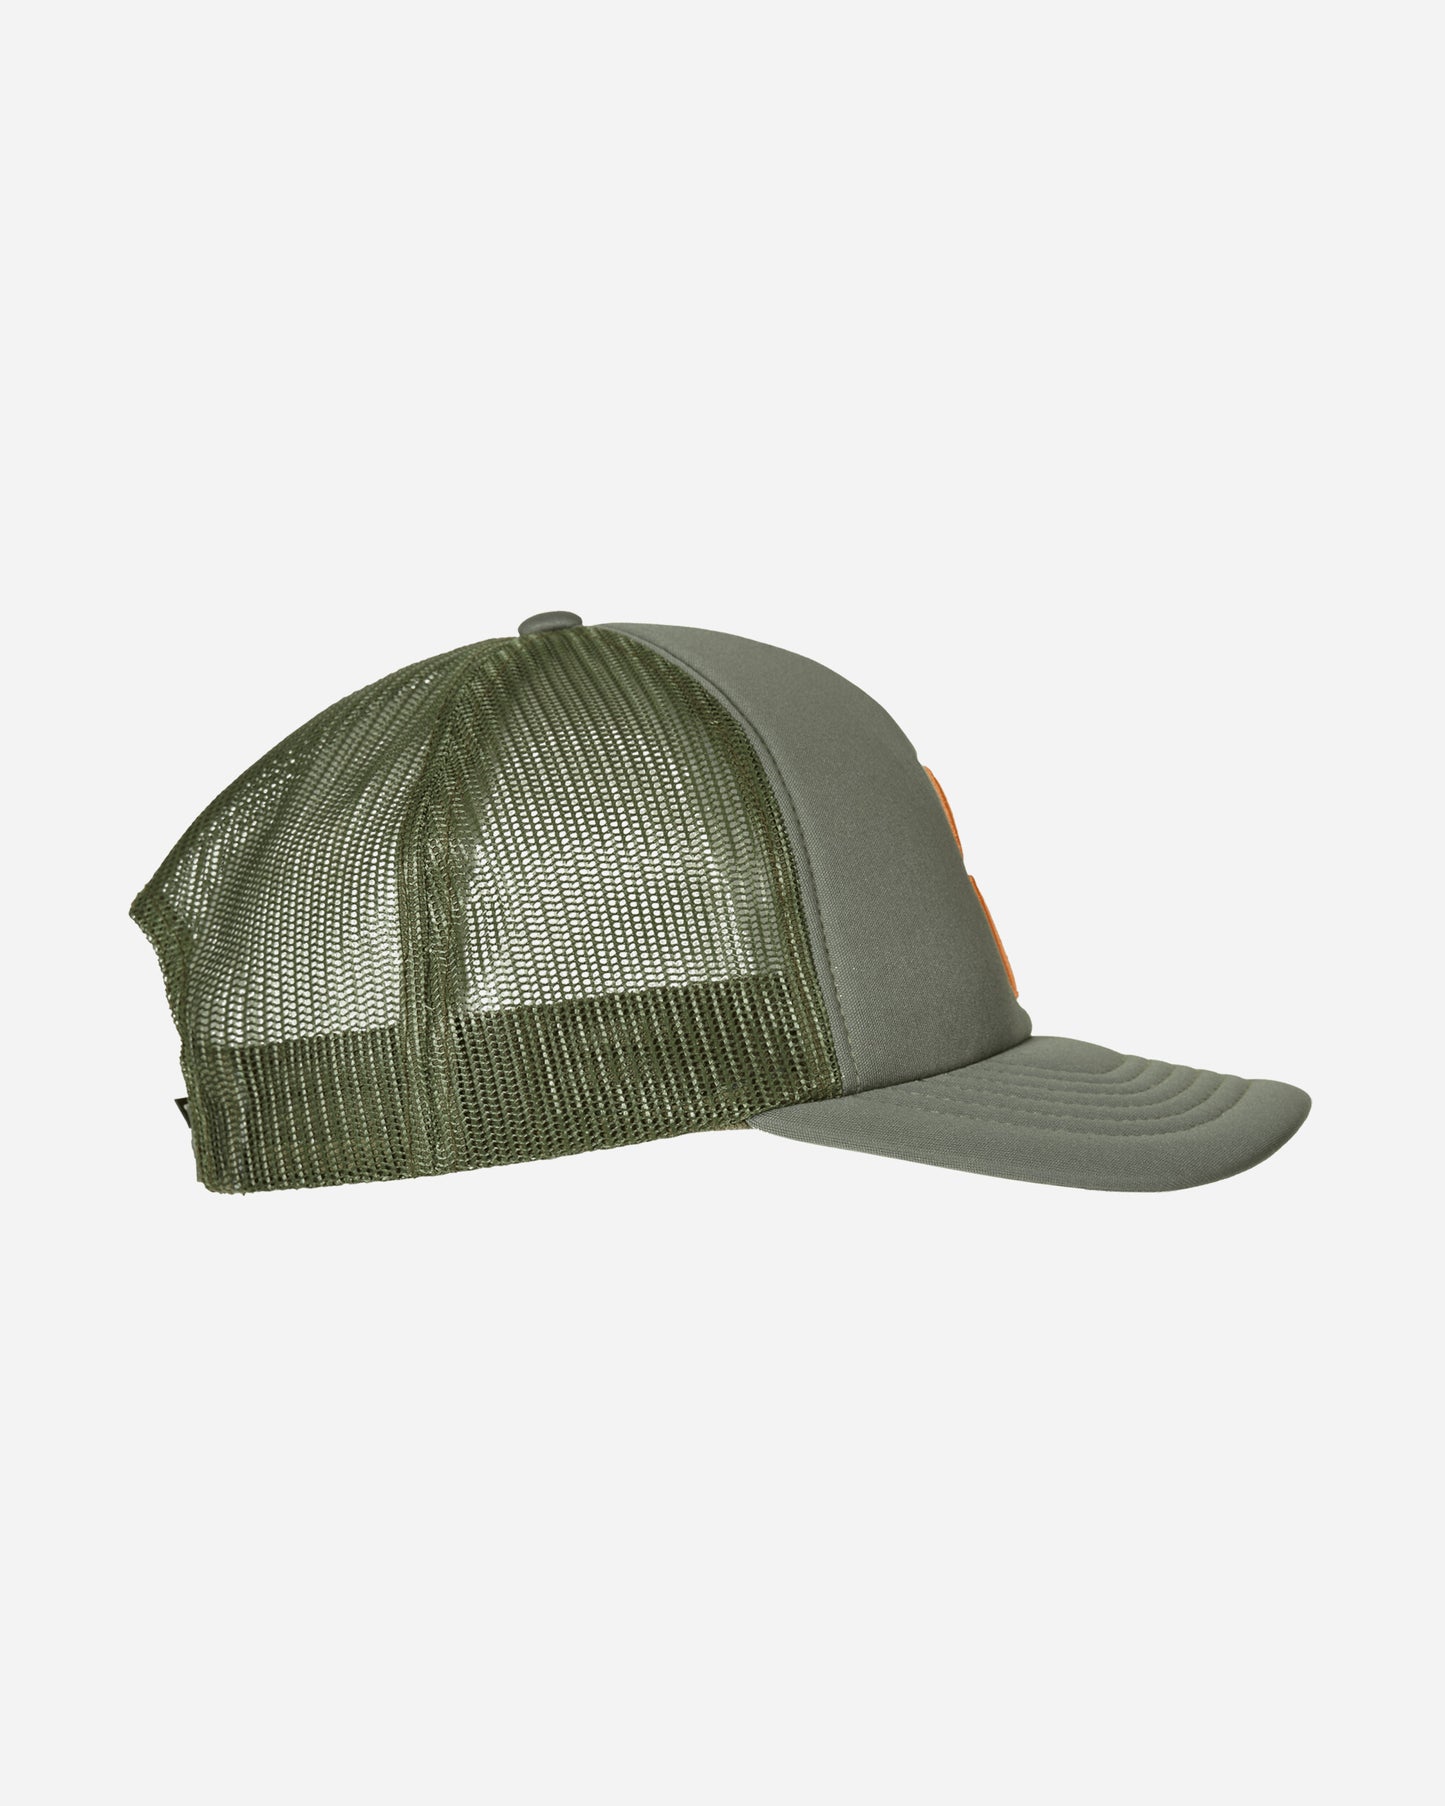 Stüssy Big S Trucker Cap Olive Hats Caps 1311132 0403